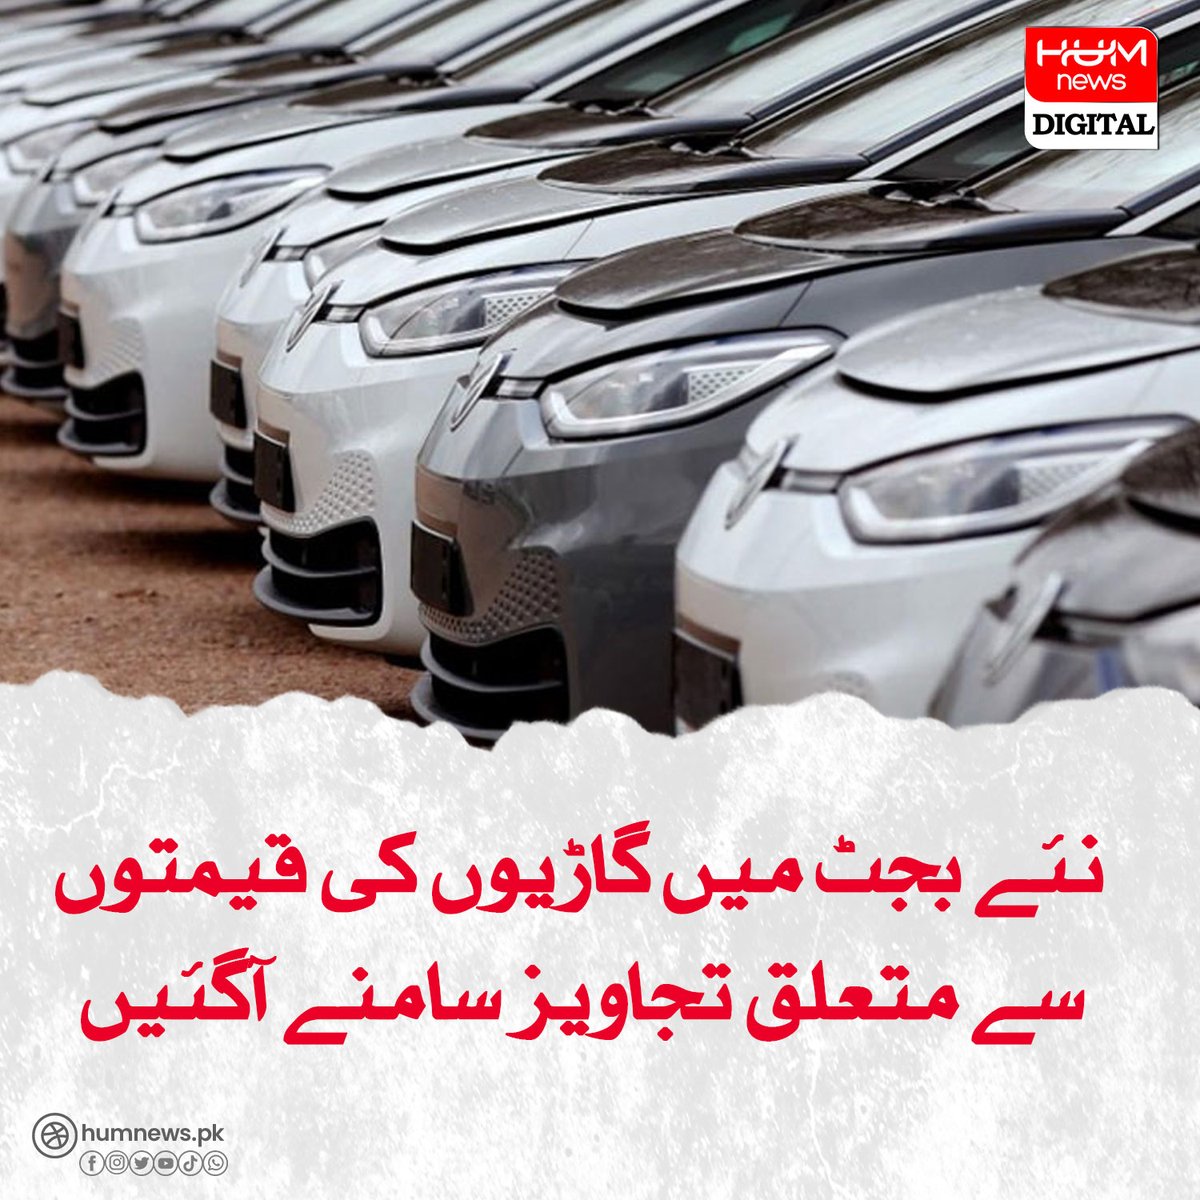 نئے بجٹ میں گاڑیوں کی قیمتوں سے متعلق تجاویز سامنے آگئیں humnews.pk/latest/482327/